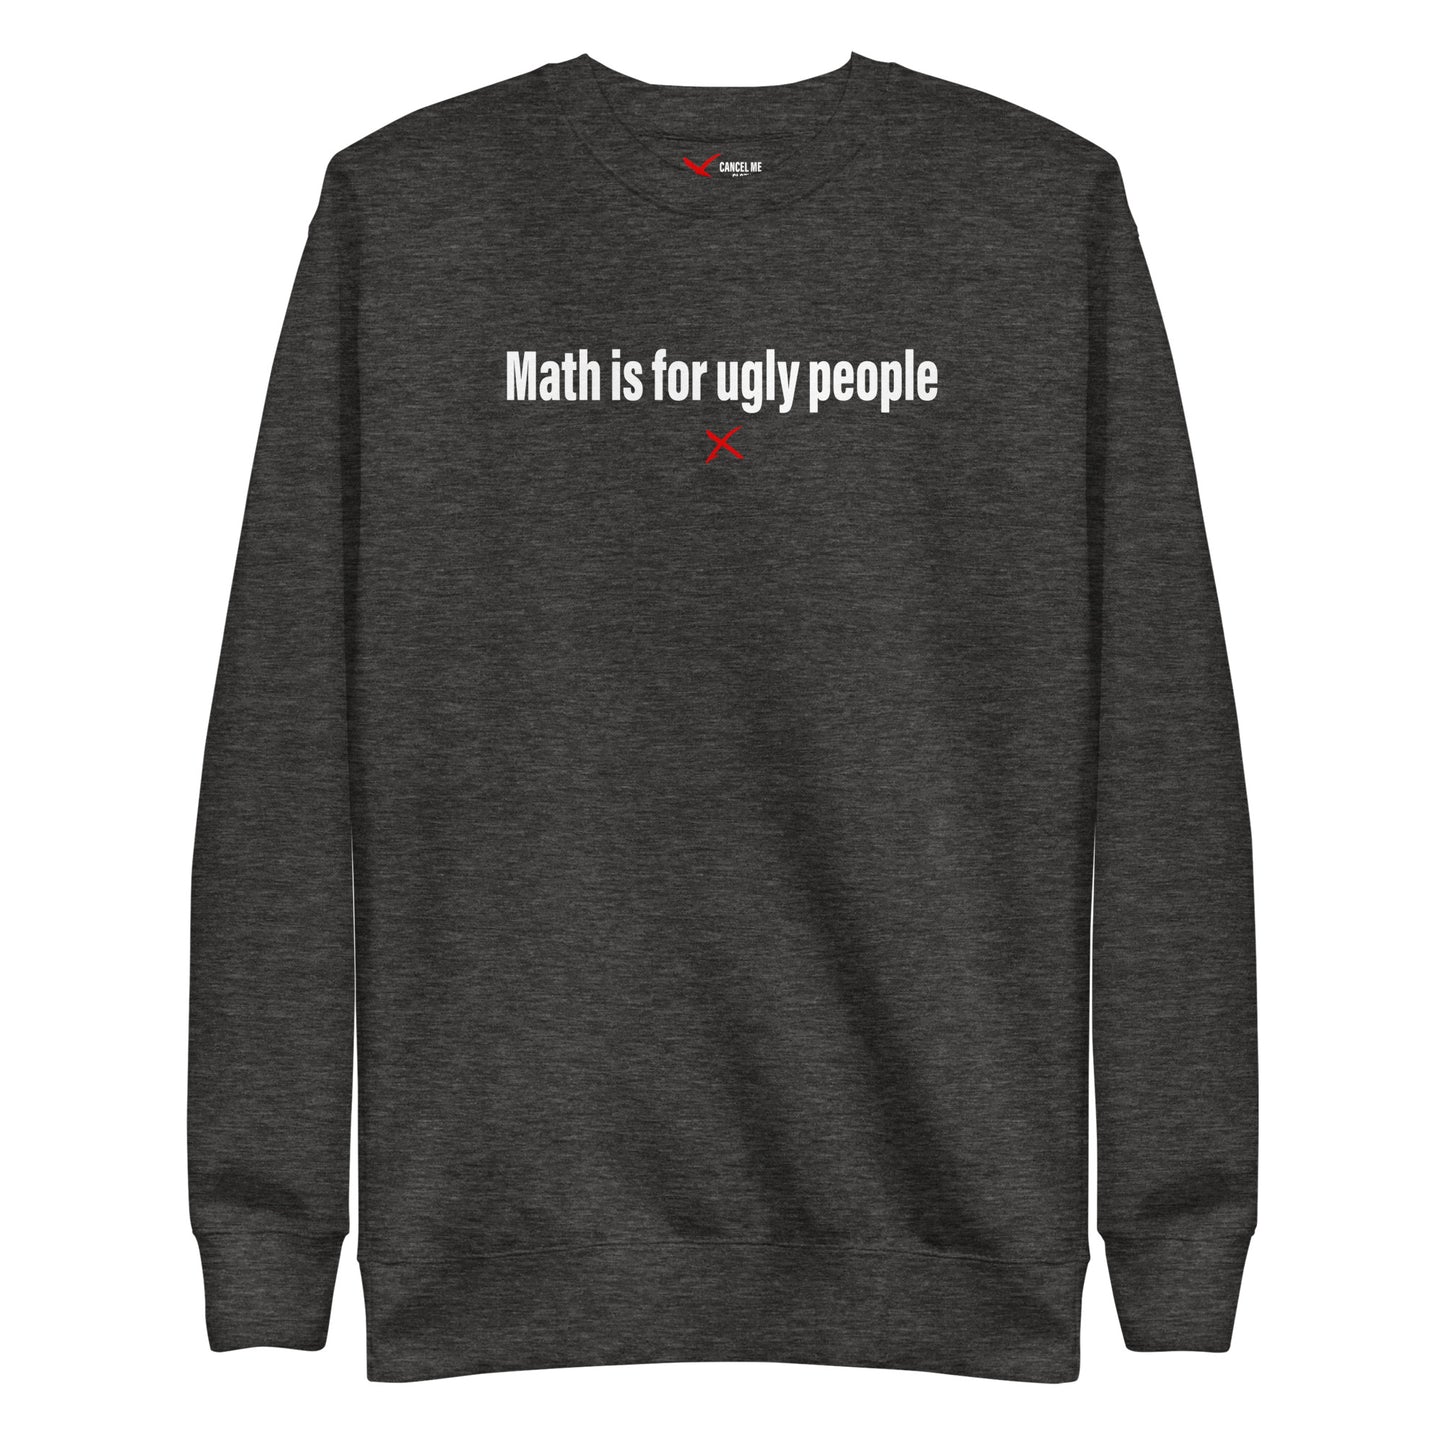 Math is for ugly people - Sweatshirt